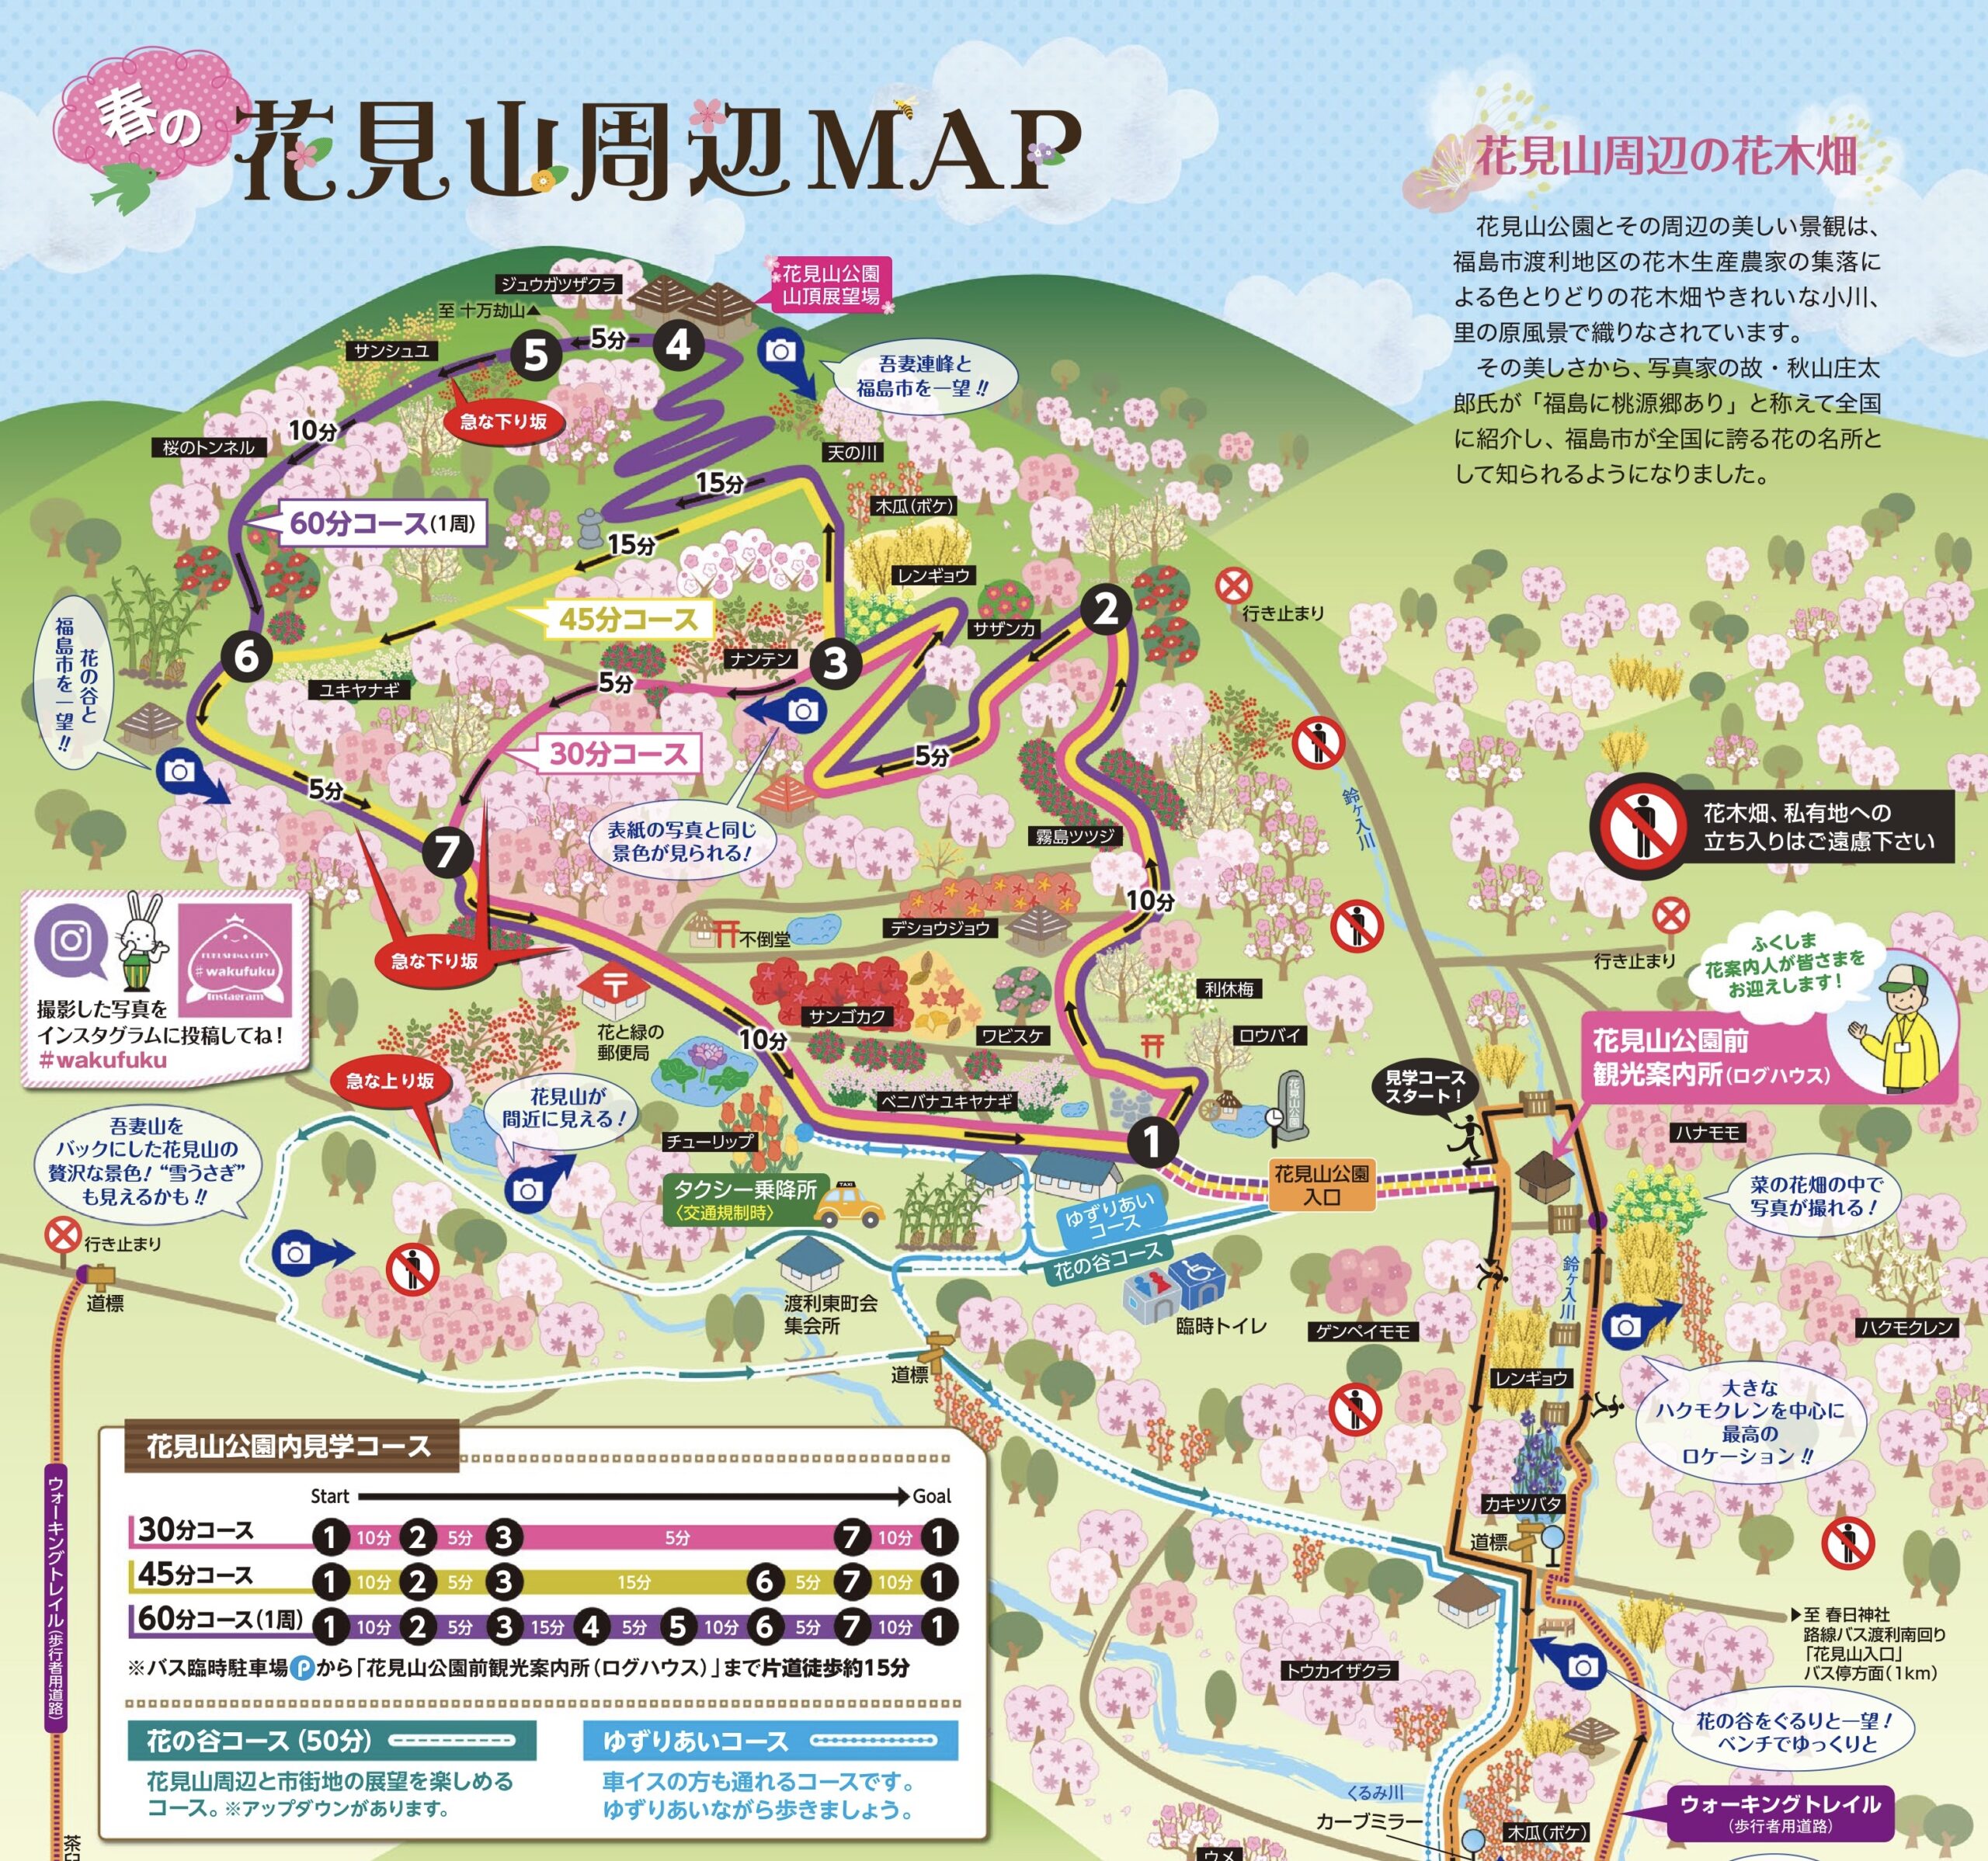 東北屈指のお花見スポット 花見山 をハイキングしてみよう 福島市観光ノート 福島市の観光webメディア